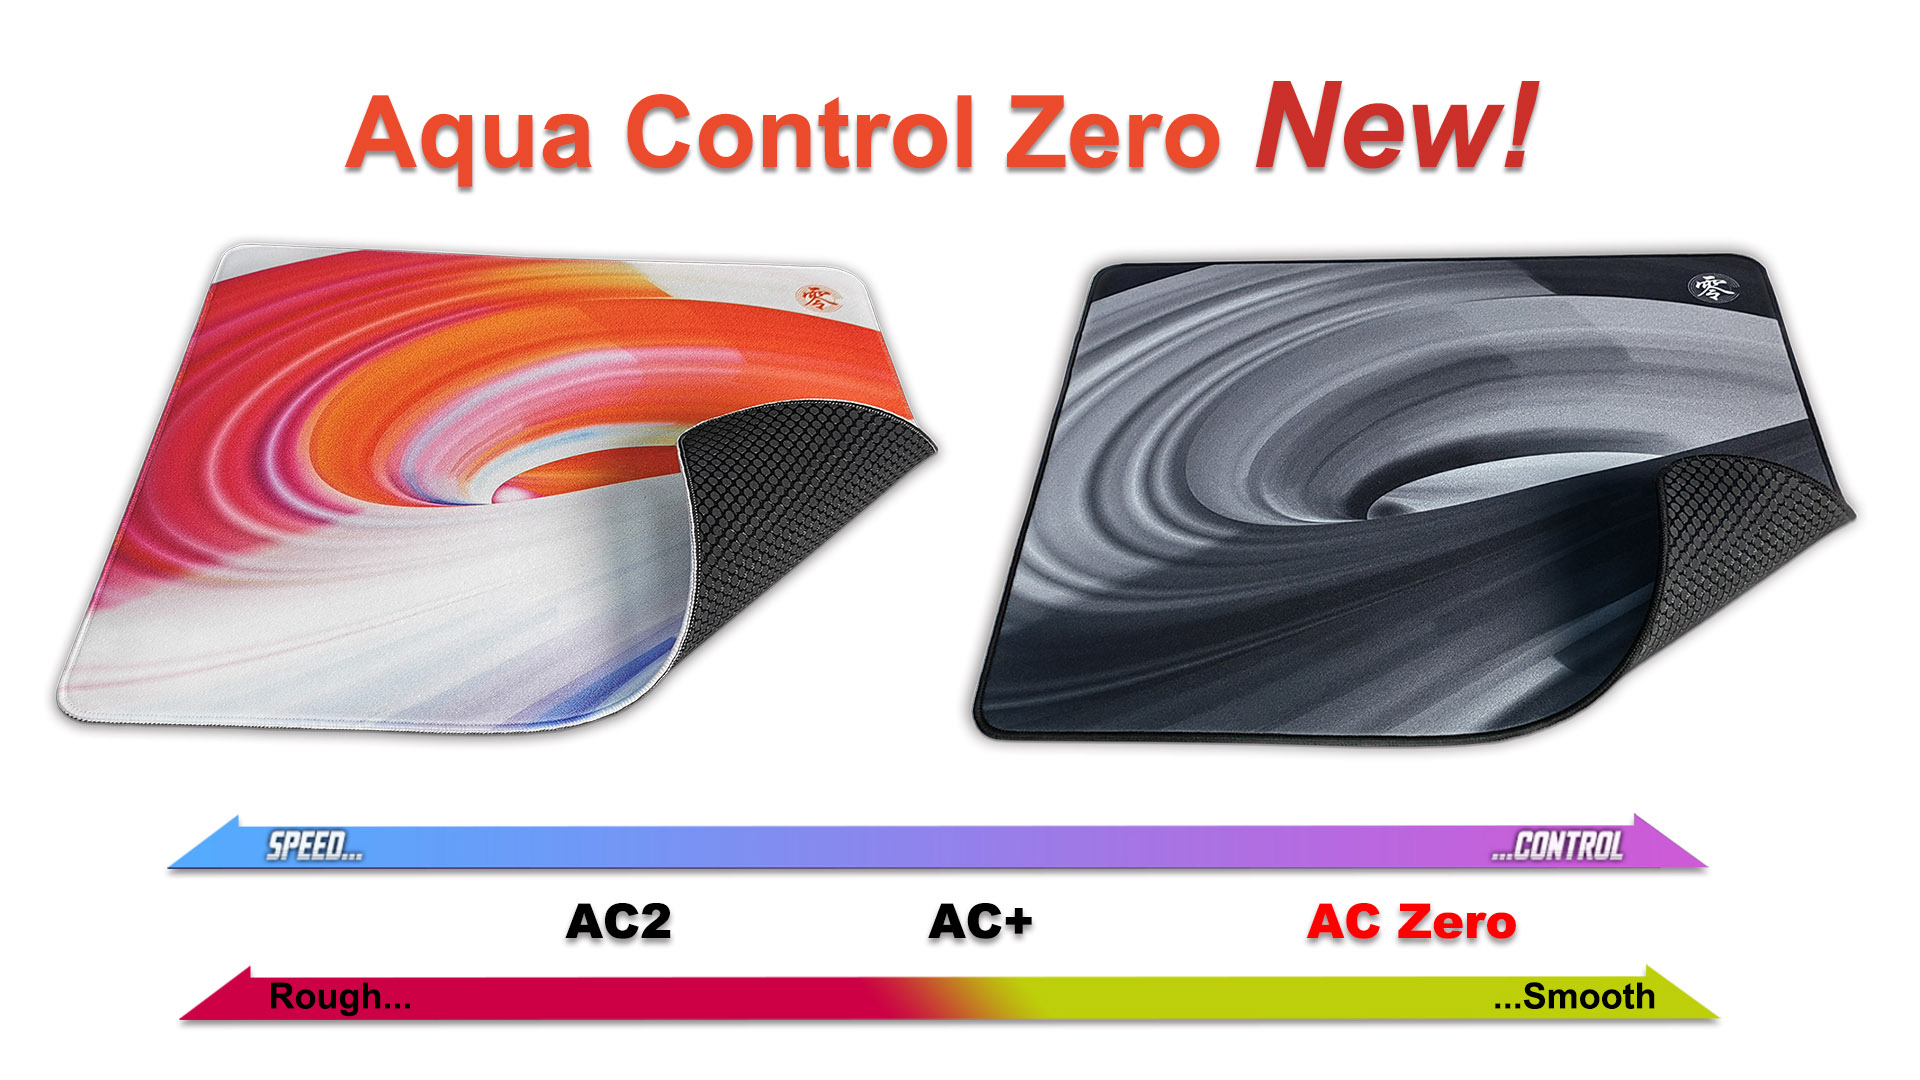 Aqua Control Zero control mousepad